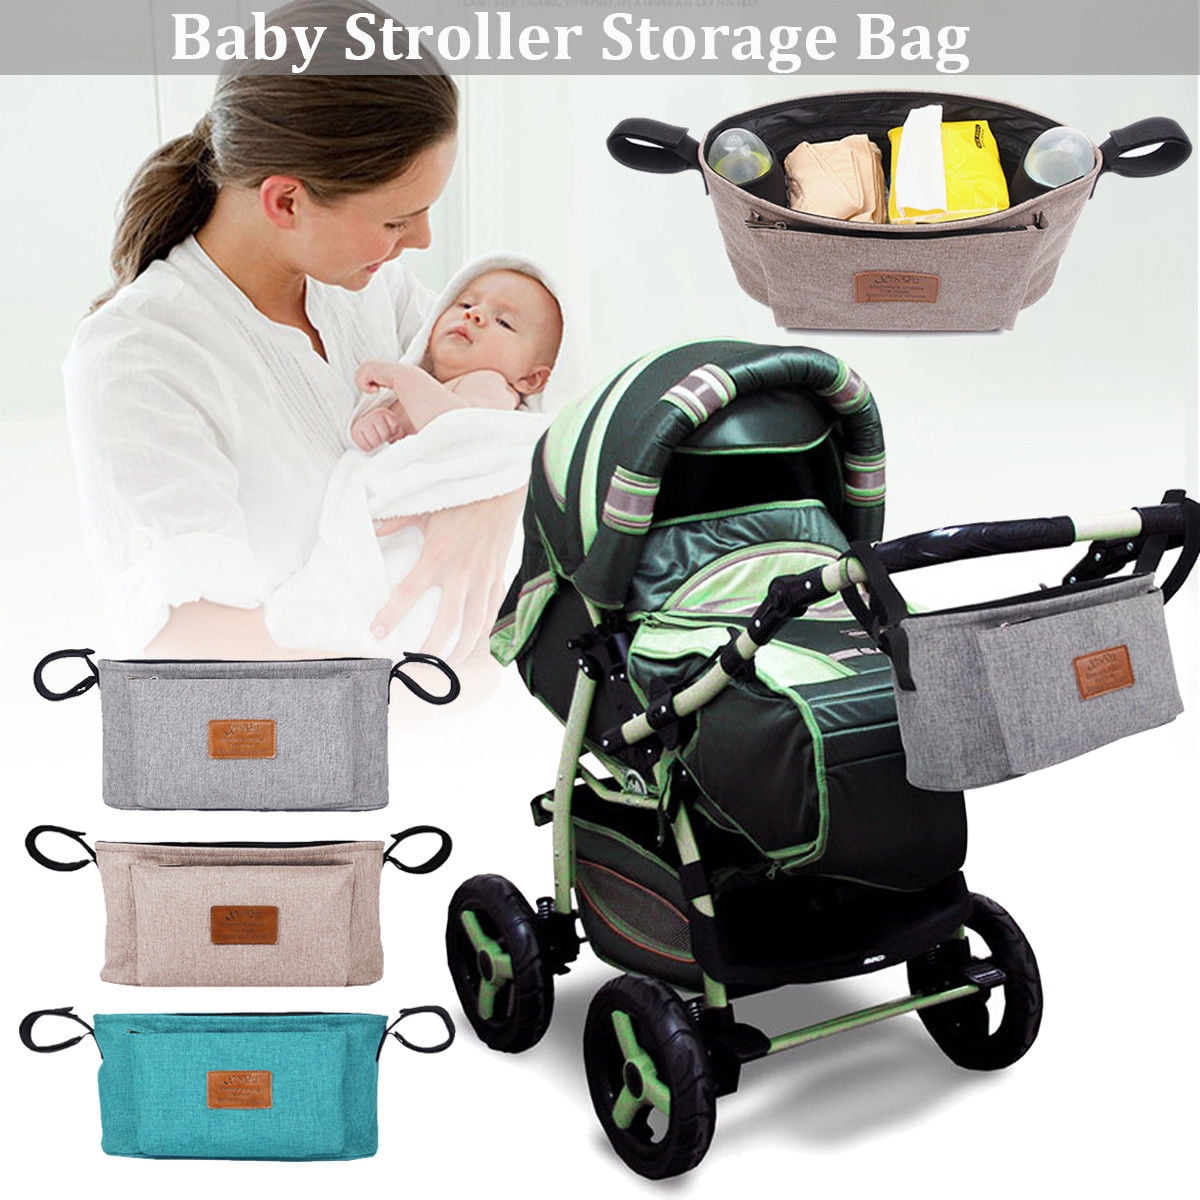 storage bag for stroller